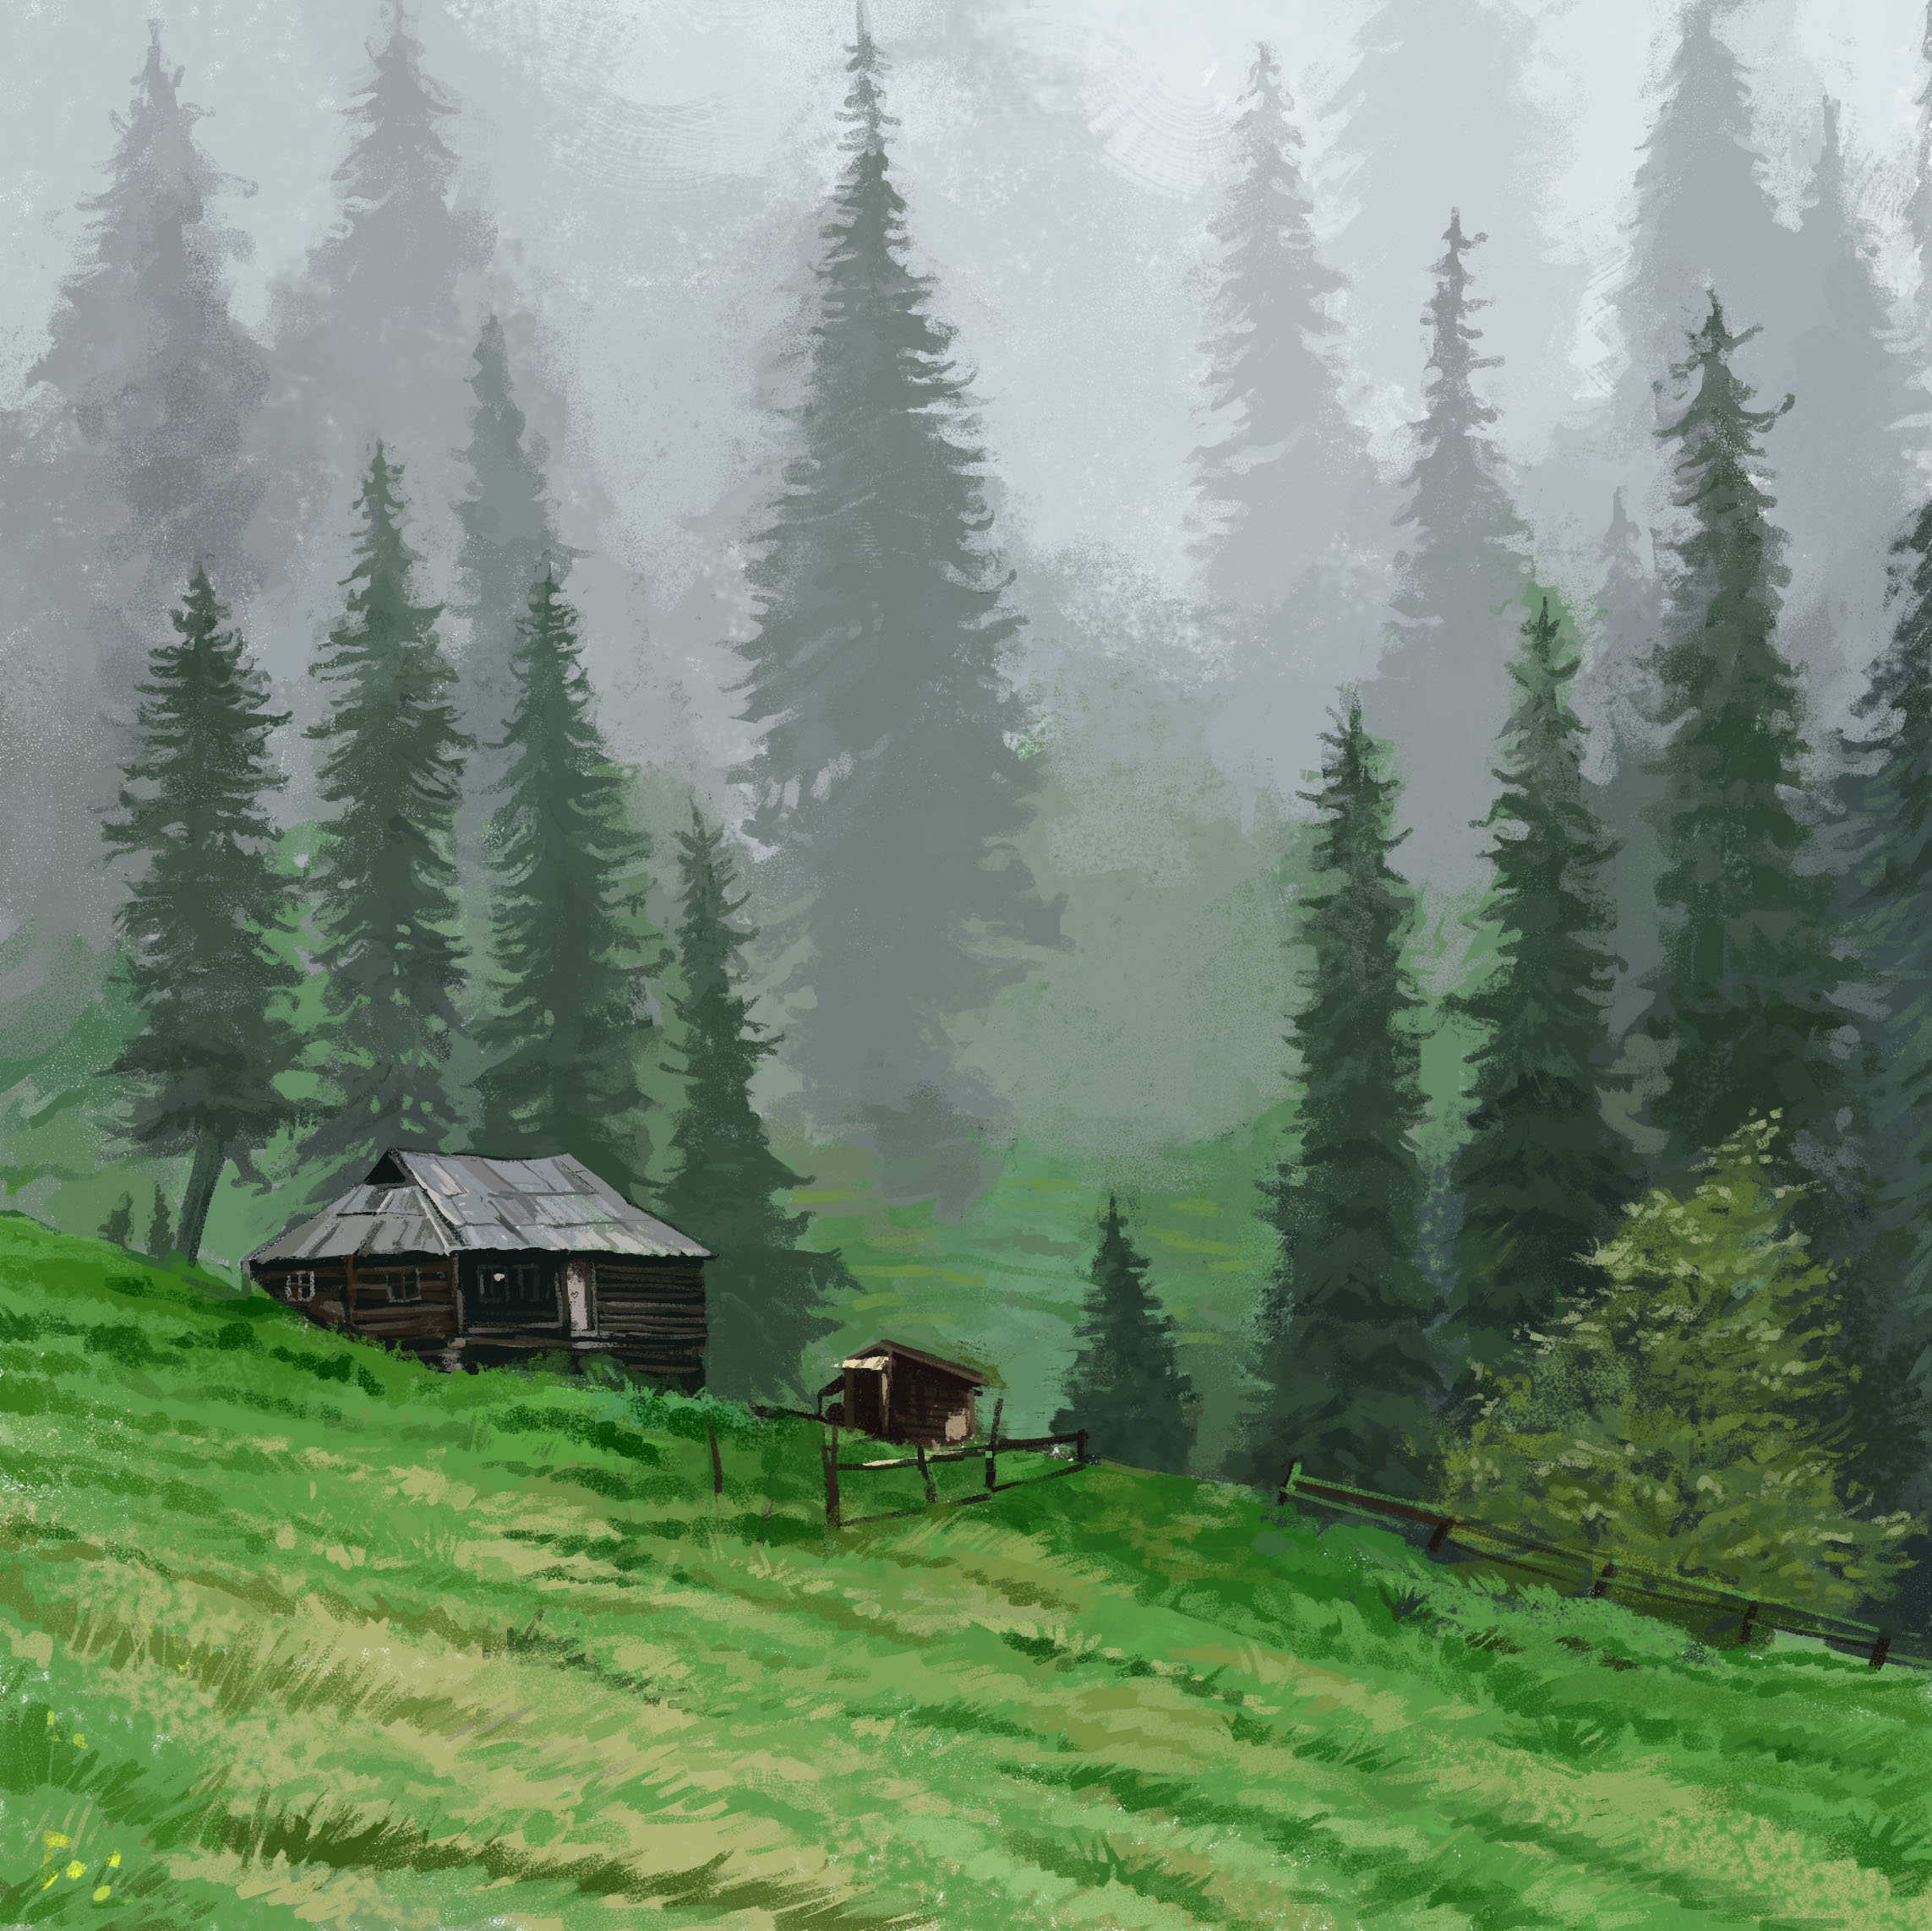 hut, trees, grass, art lock screen backgrounds